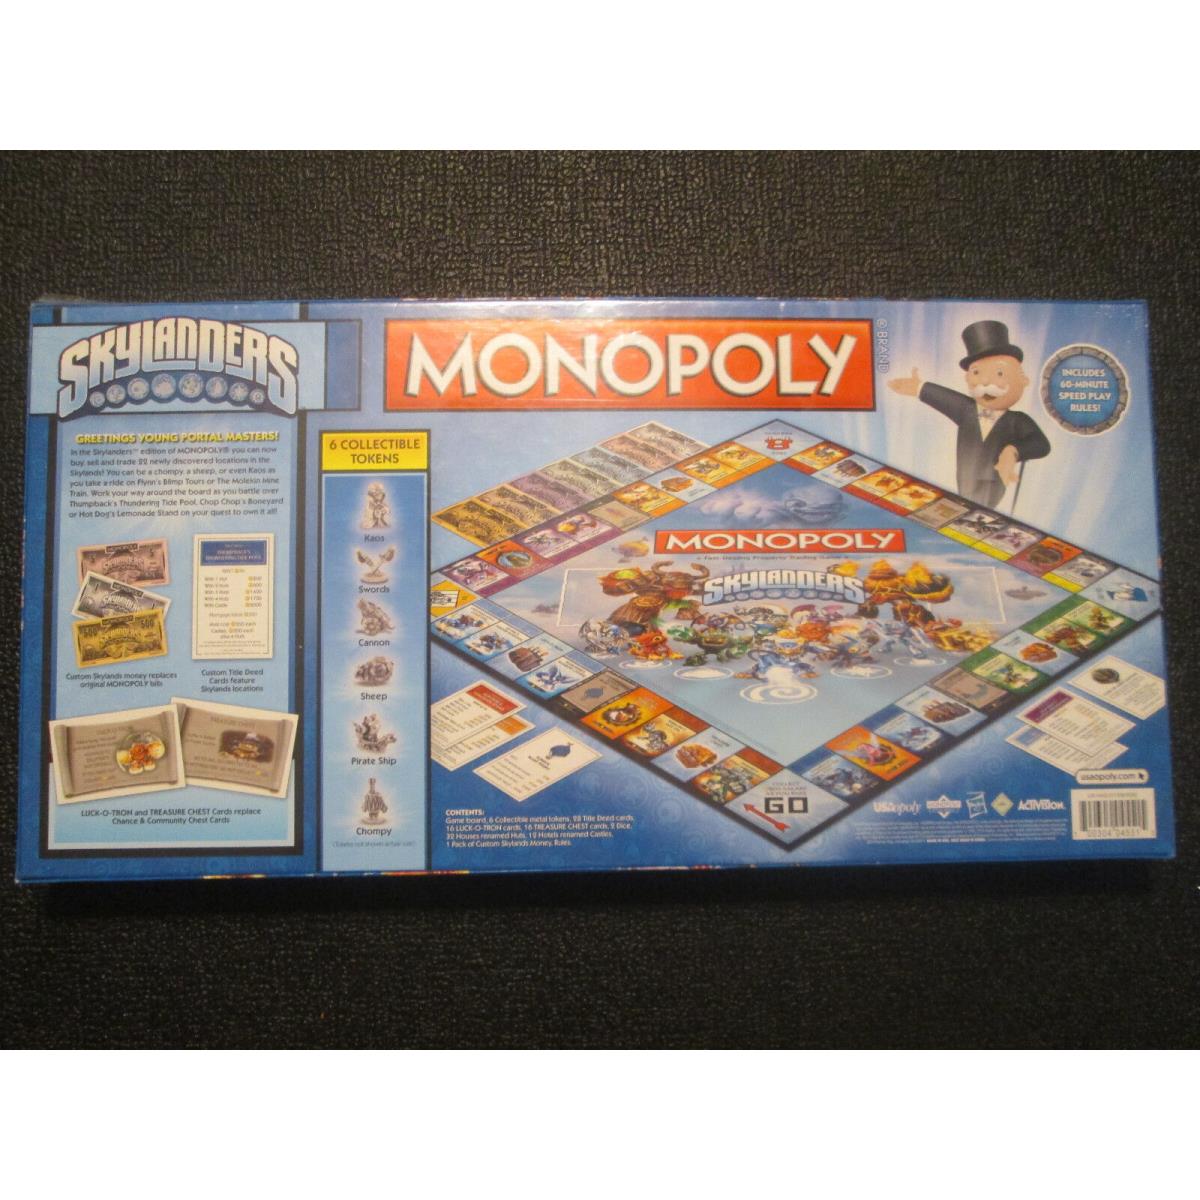 Monopoly - Skylanders Version